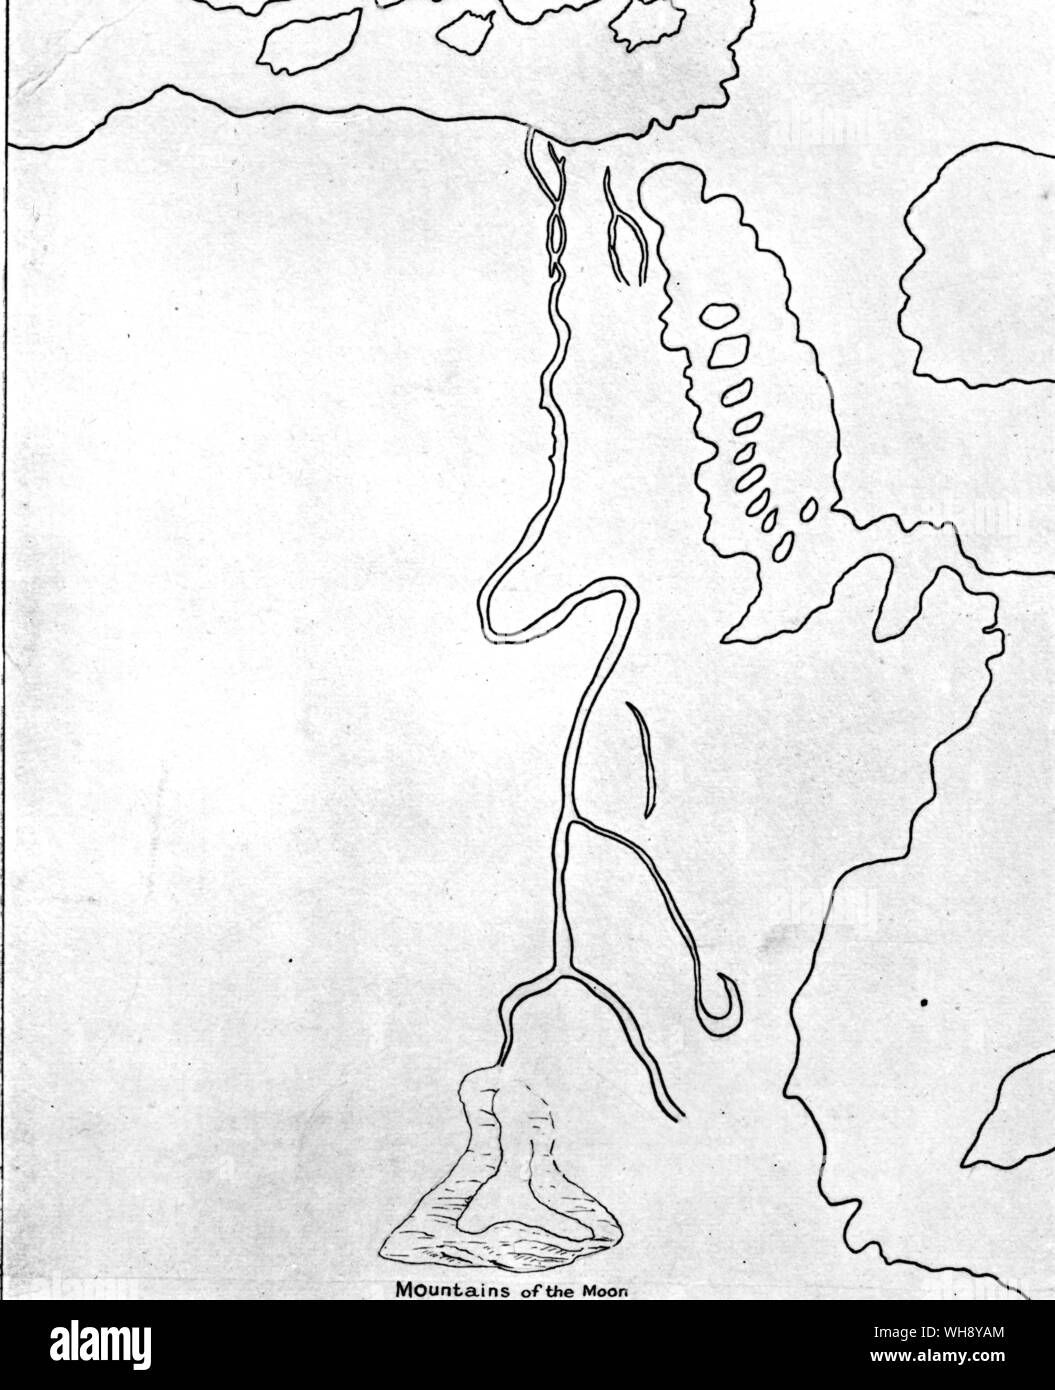 El curso del río Nilo, según la antigua versión existente del mapa de Ptolomeo. . Foto de stock